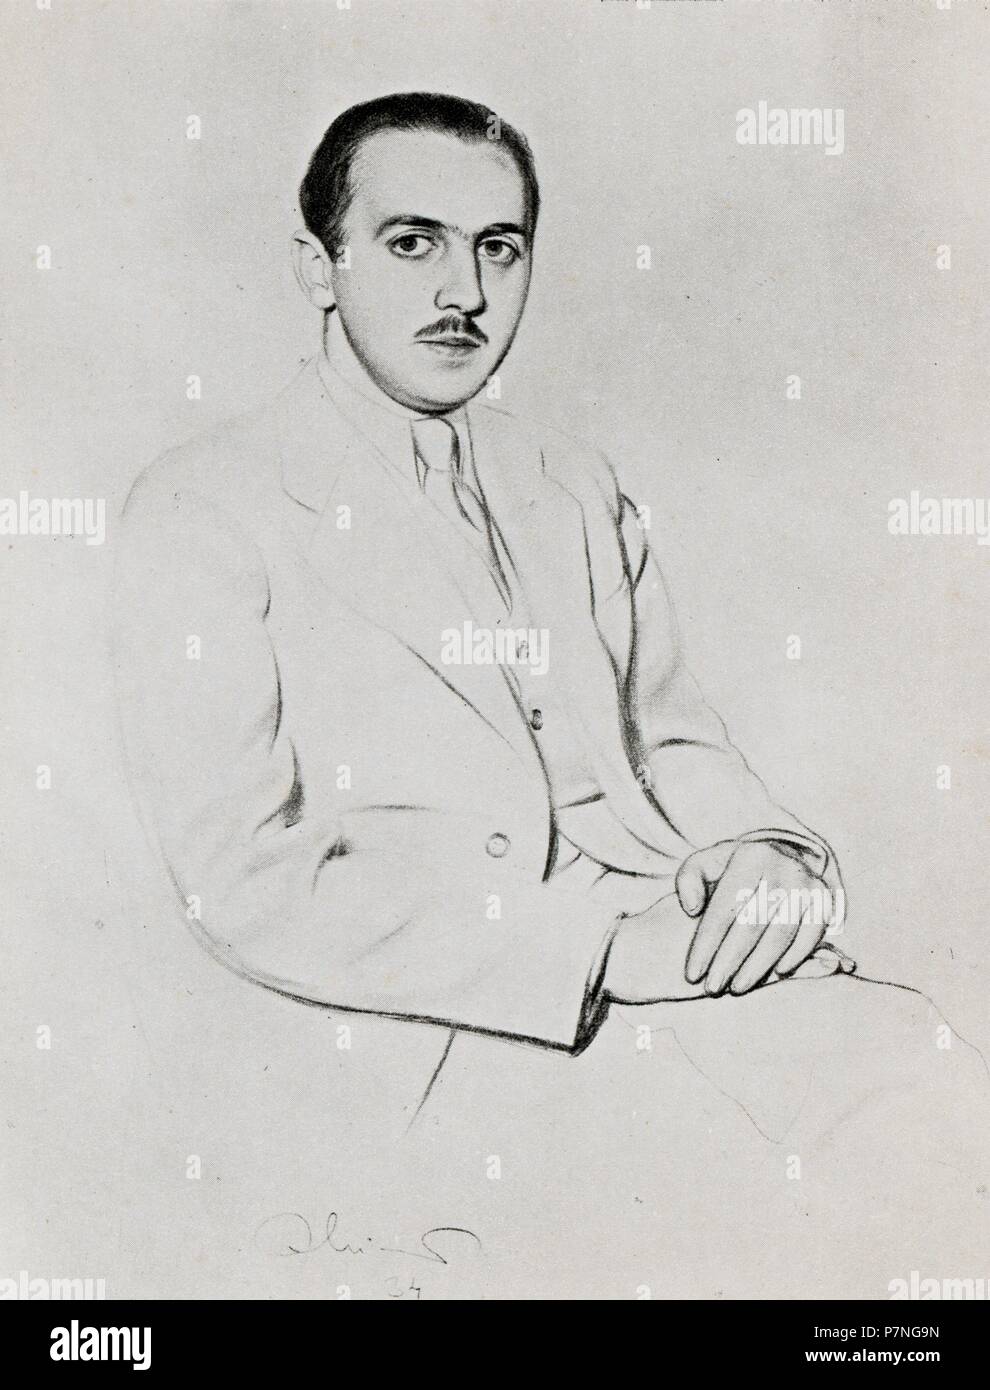 Manuel Serra Moret (1884-1963), político y escritor catalán. Dibujo de 1933. Stock Photo